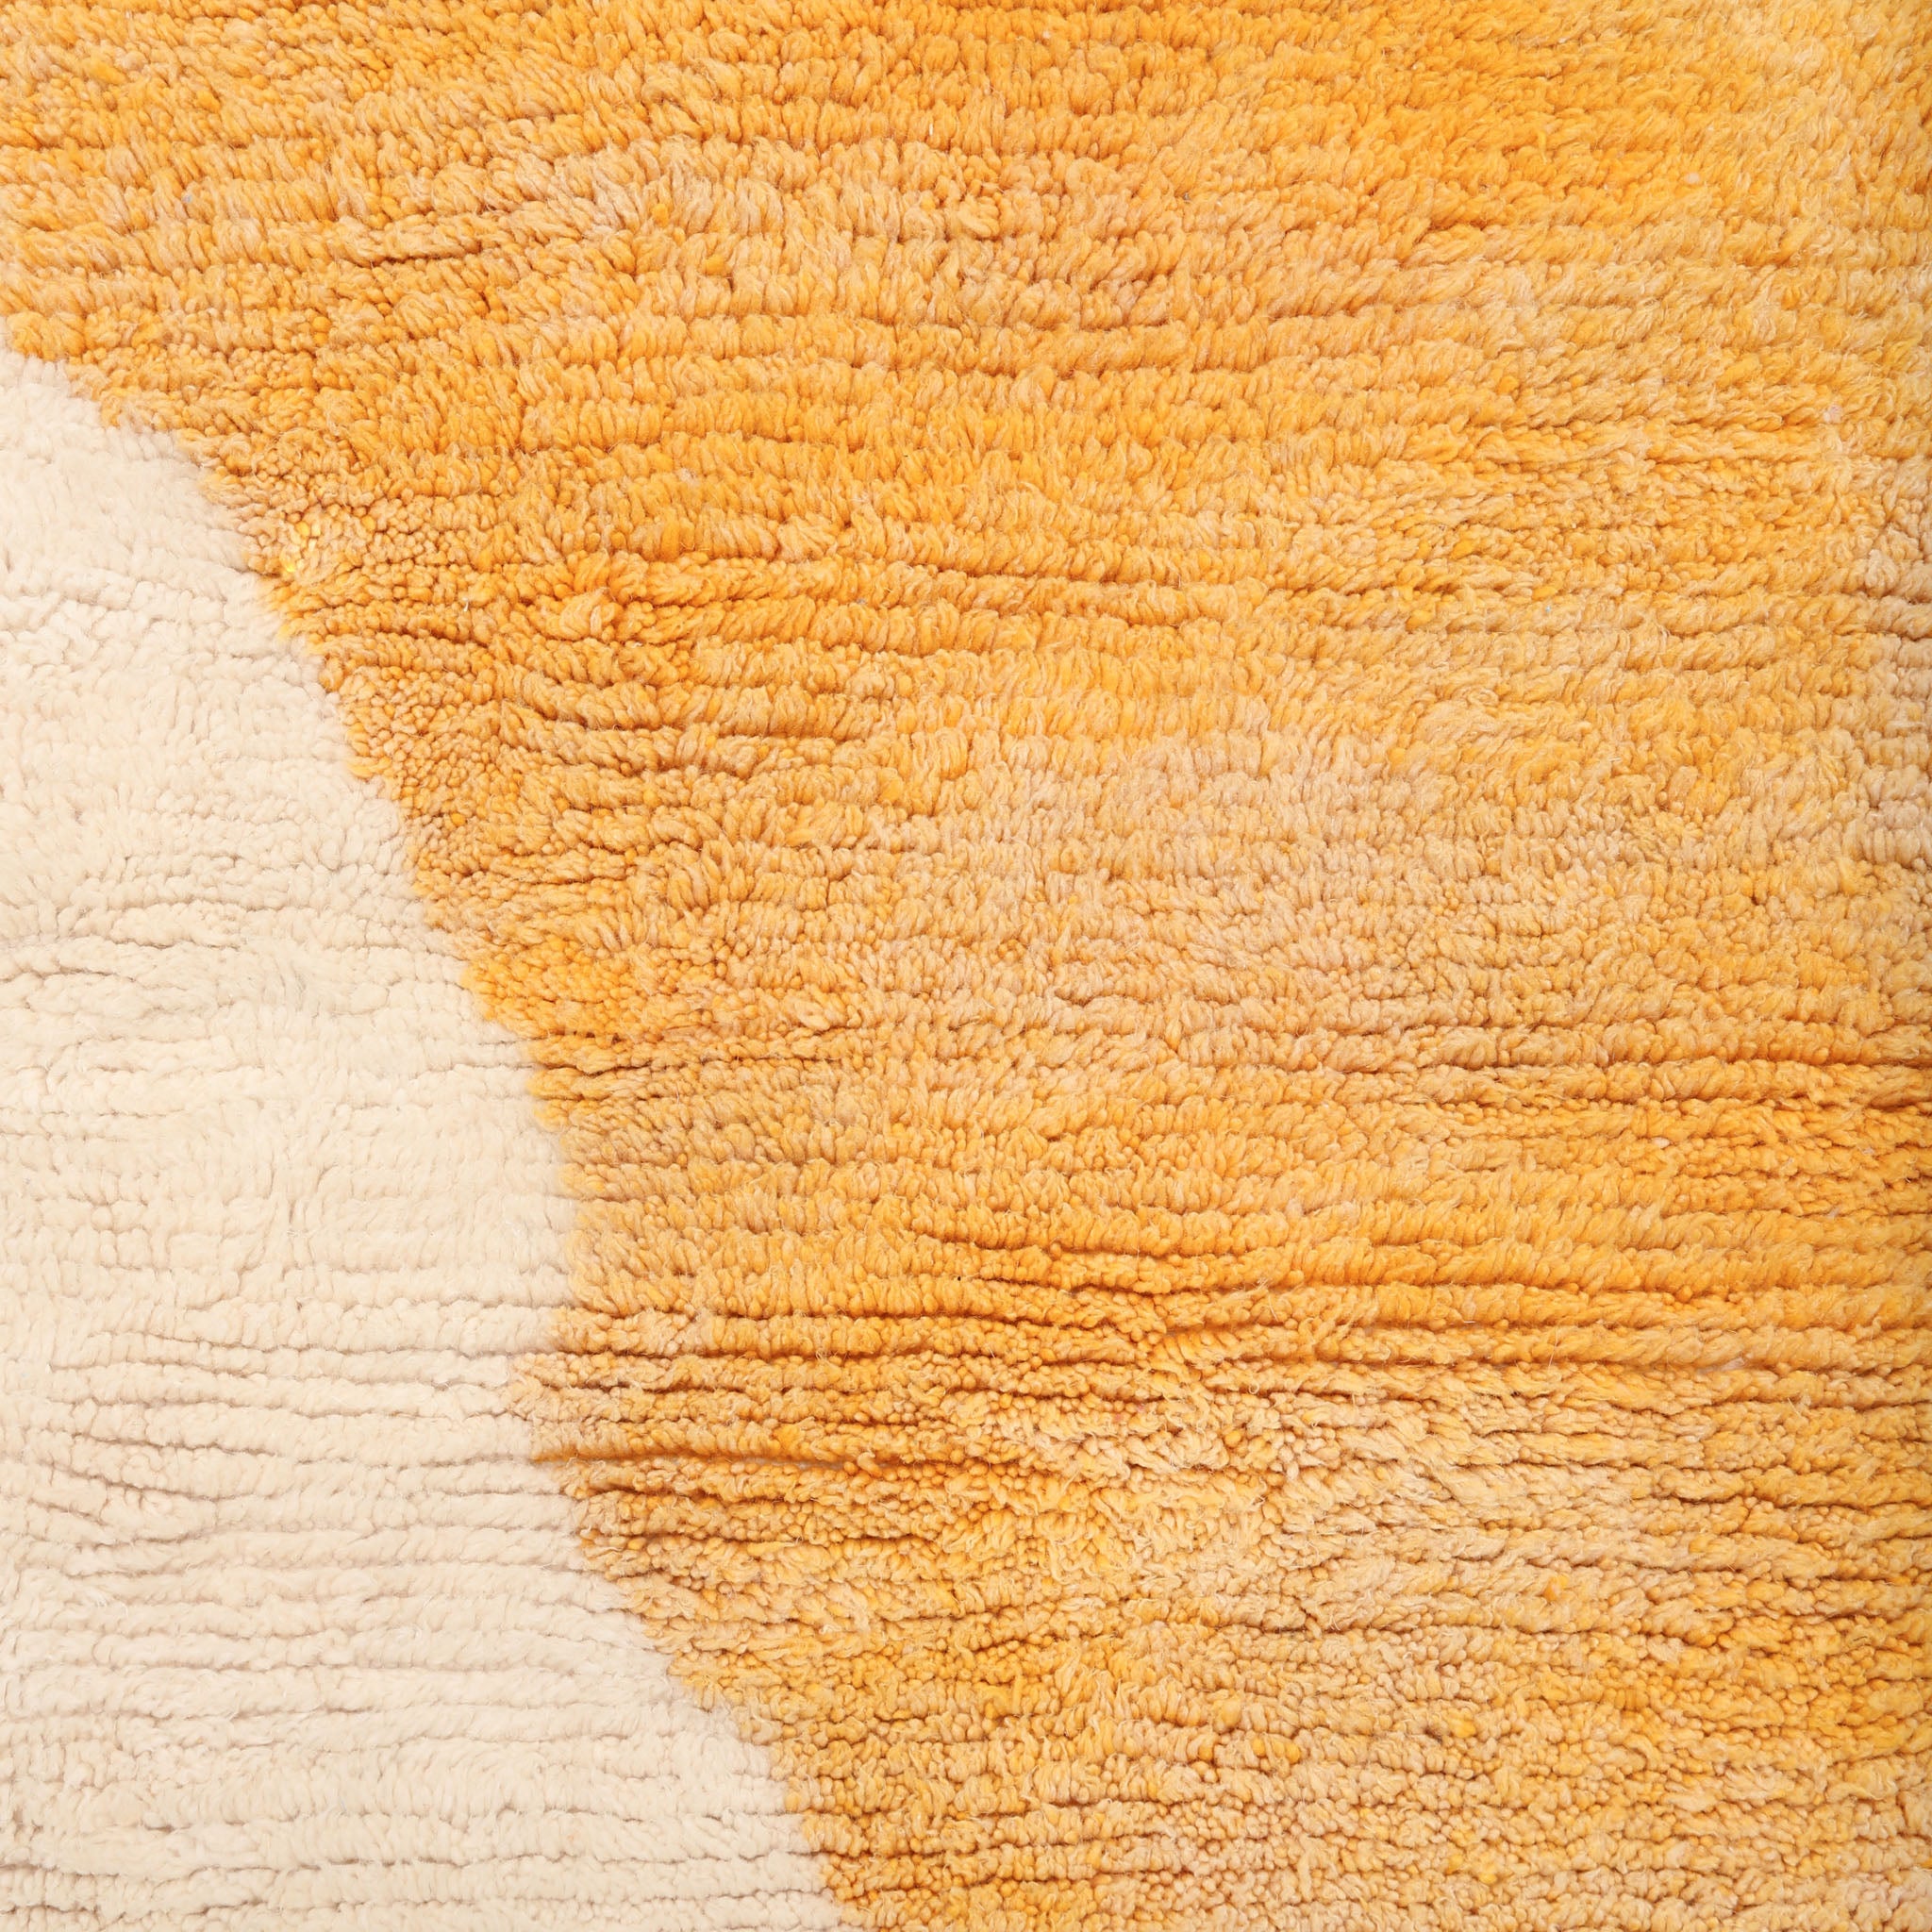 dettaglio del colore giallo sfumato di un tappeto azilal realizzato a mano in lana